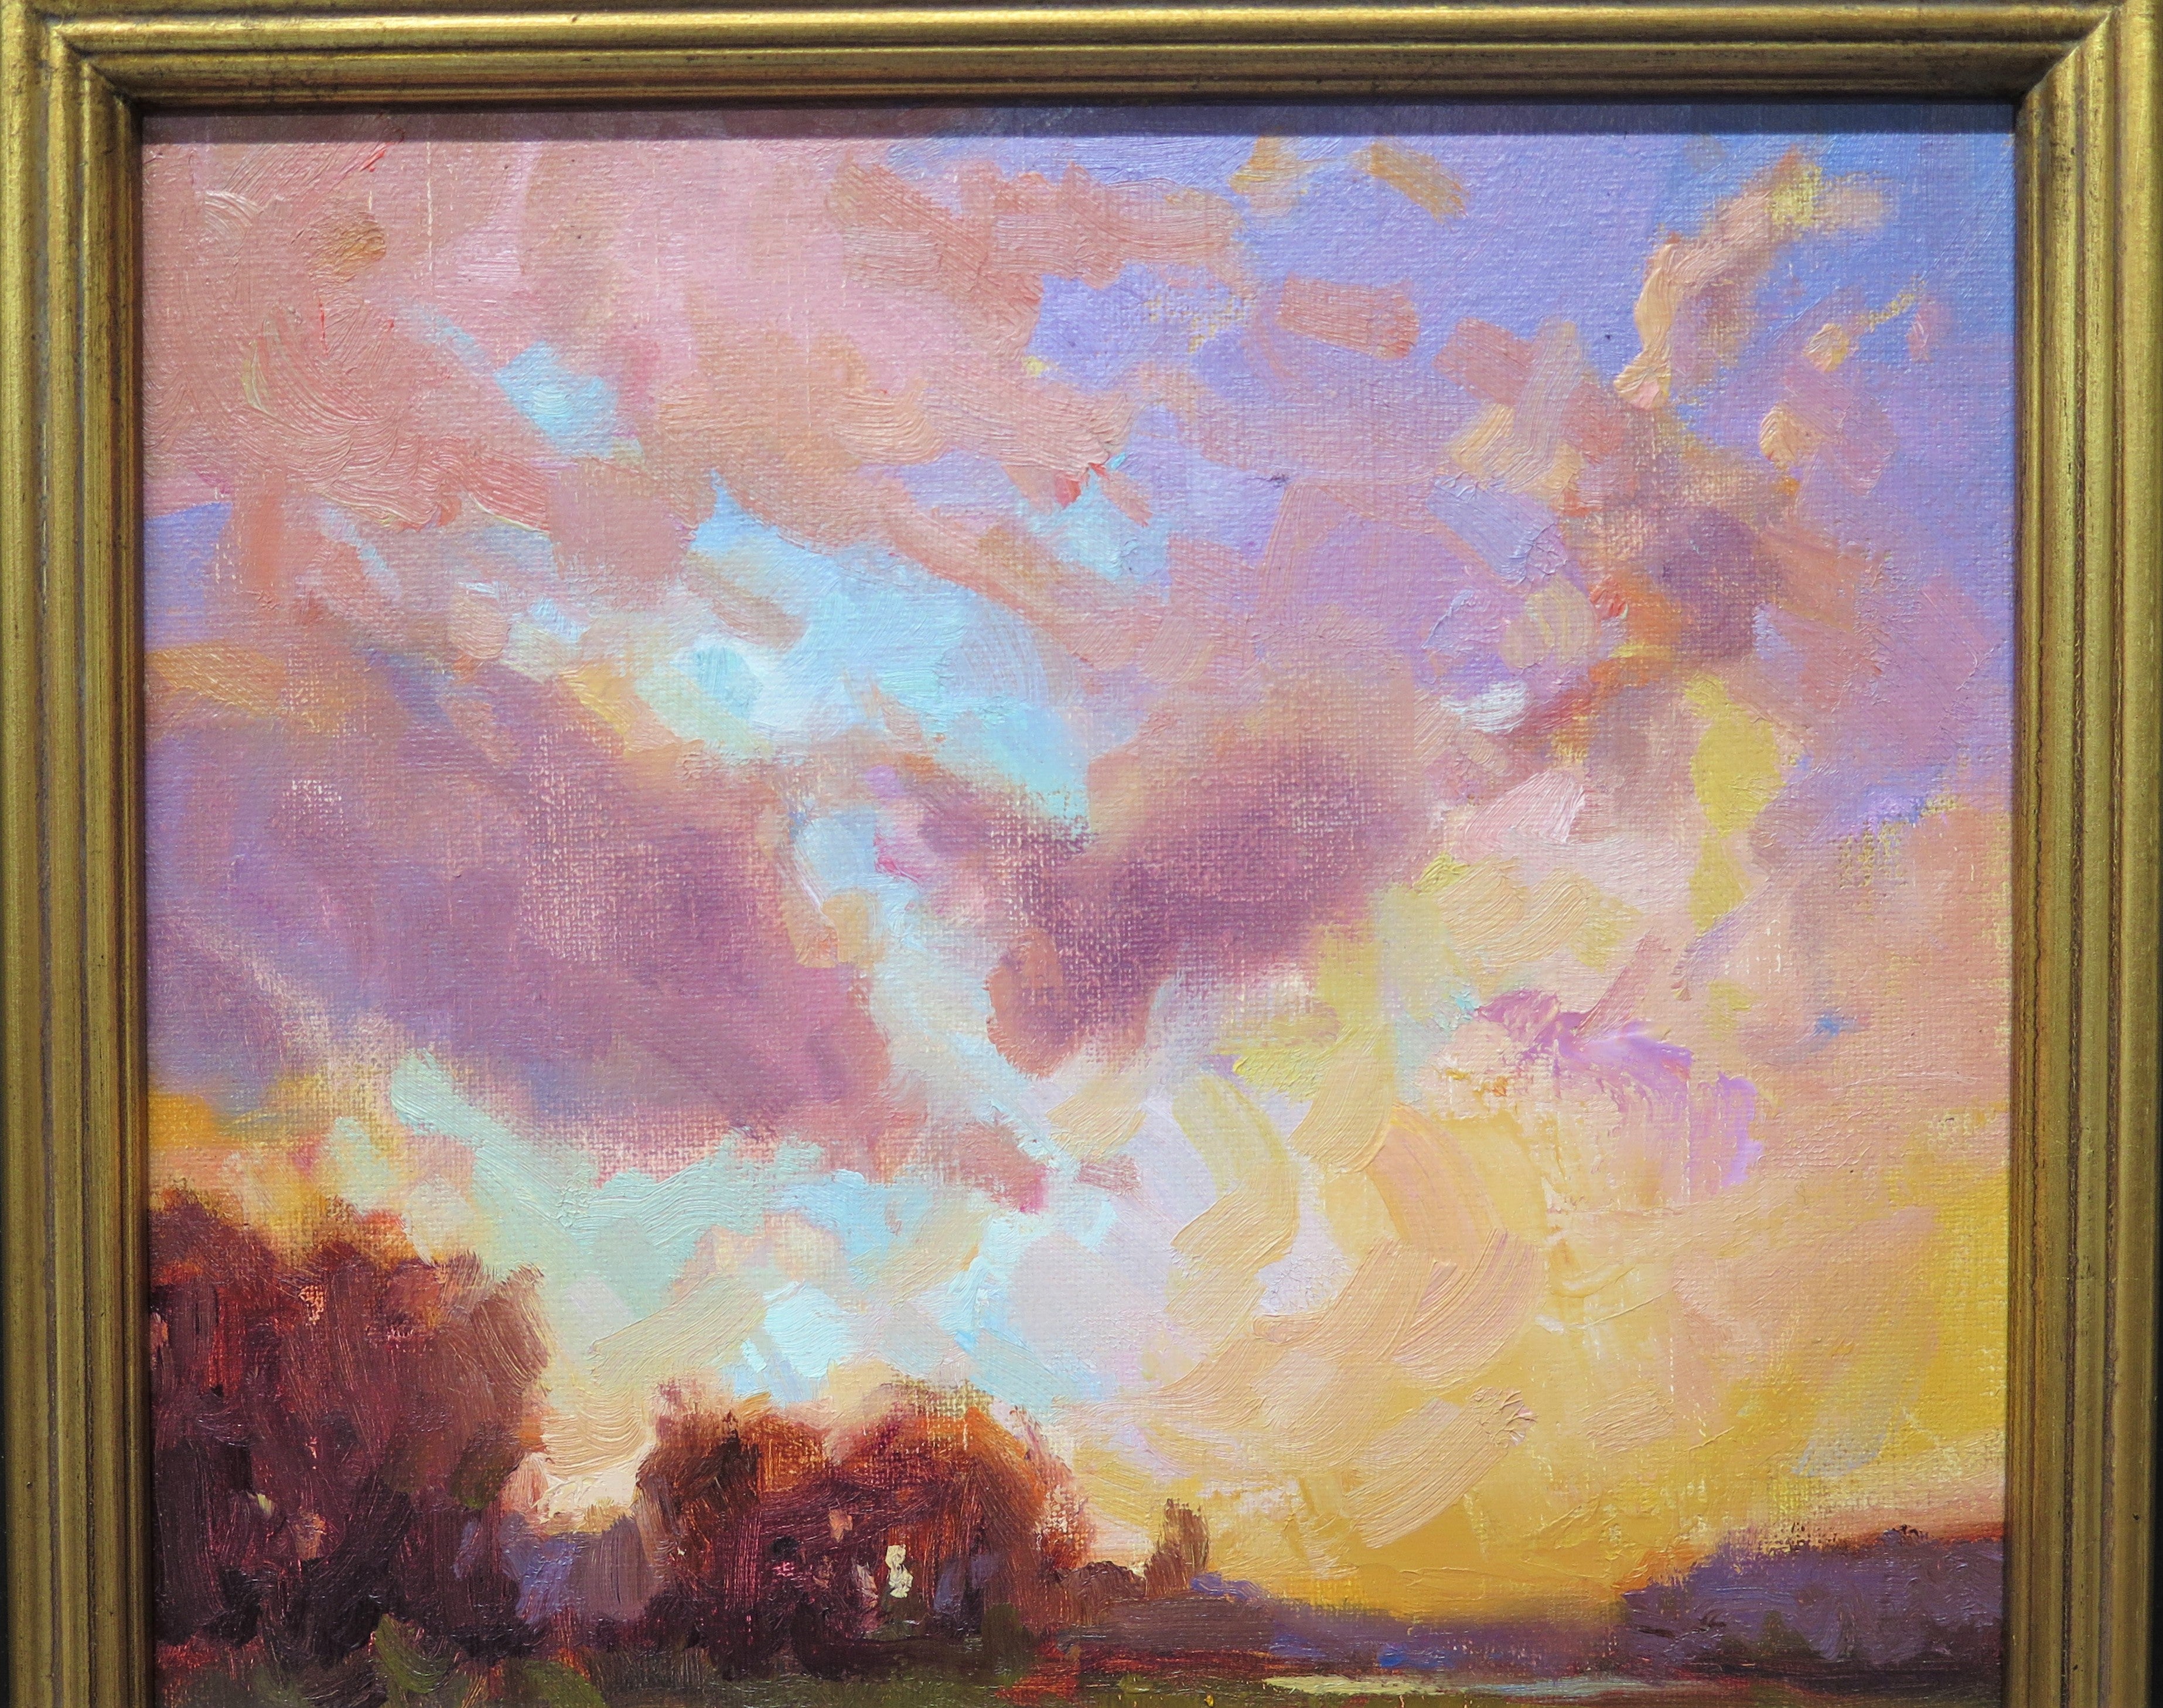 " Sunset Landscape '' Painting by Dee Beard Dean